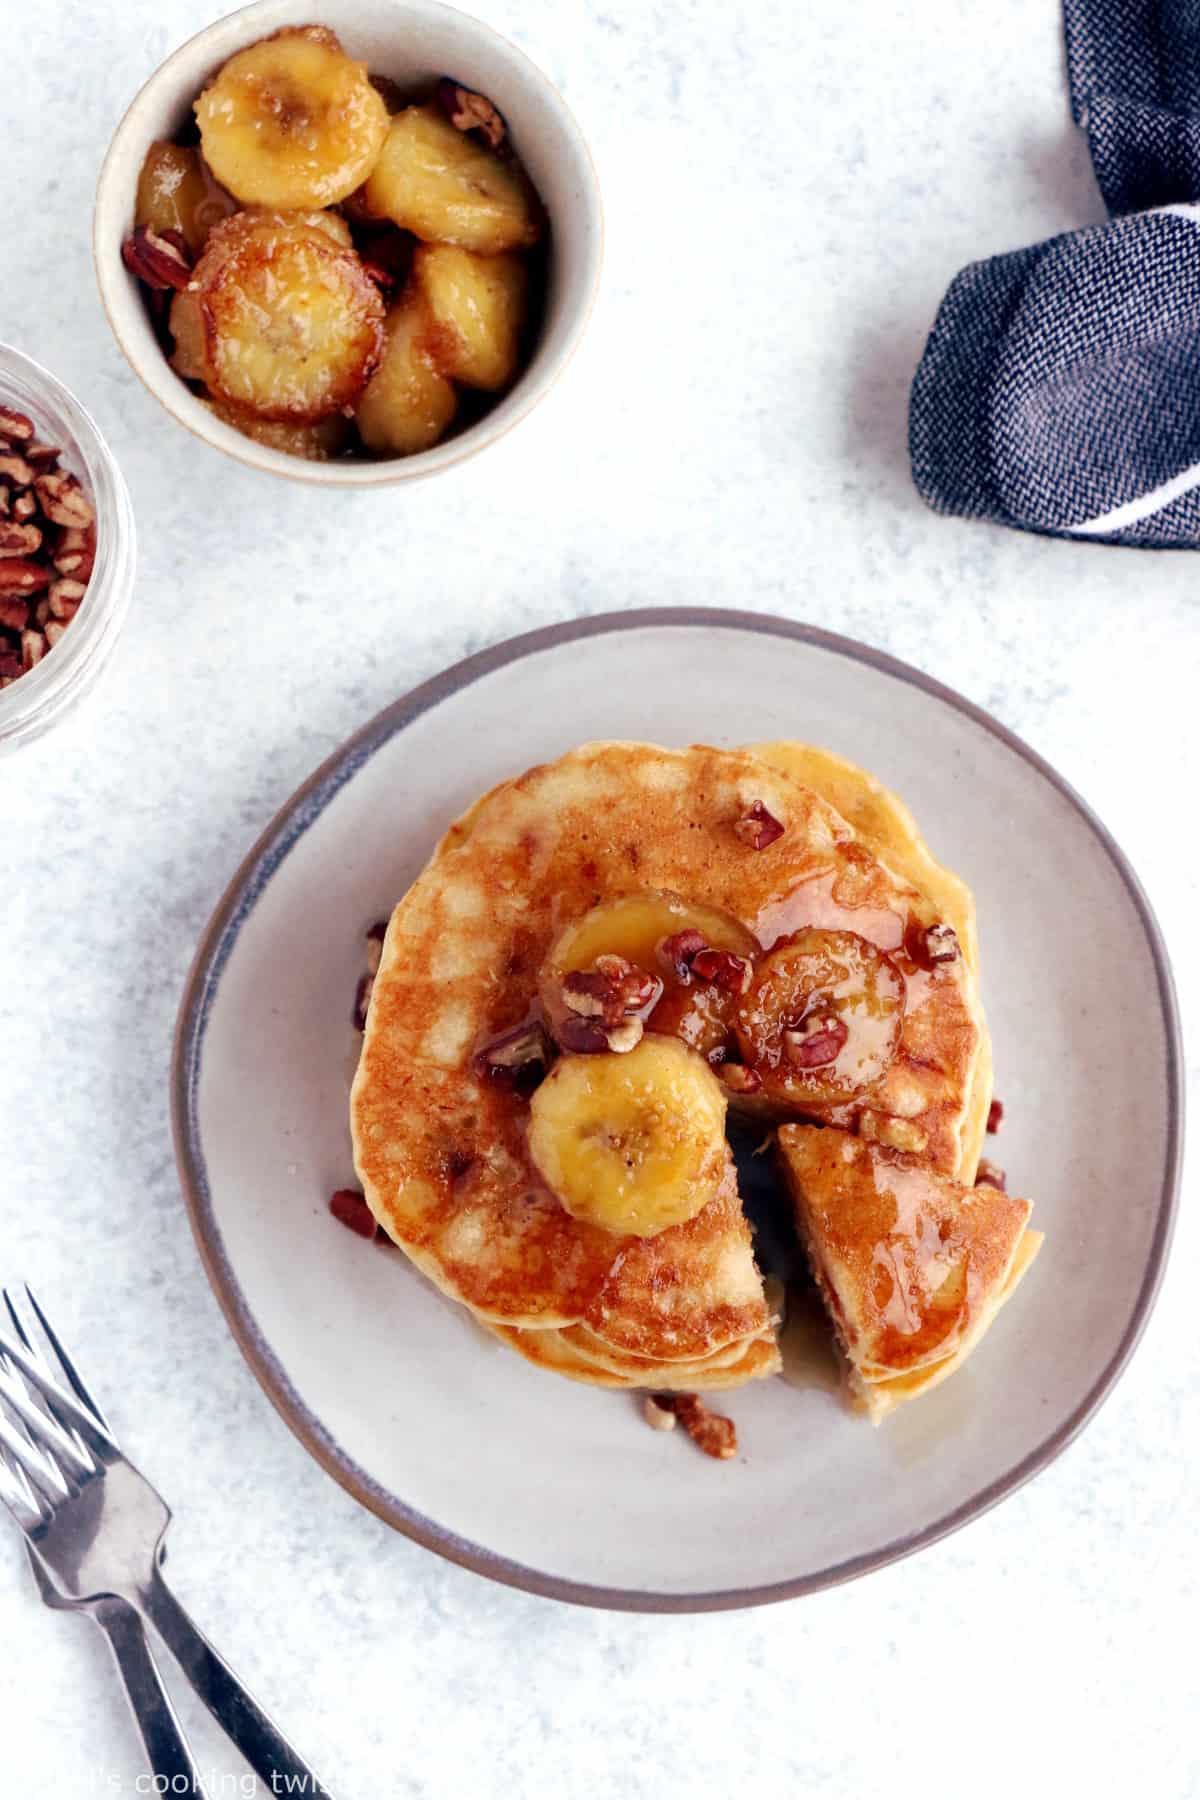 Ces pancakes à la banane sont moelleux et généreux, avec une délicieuse saveur qui vous rappelera celle d'un banana bread.